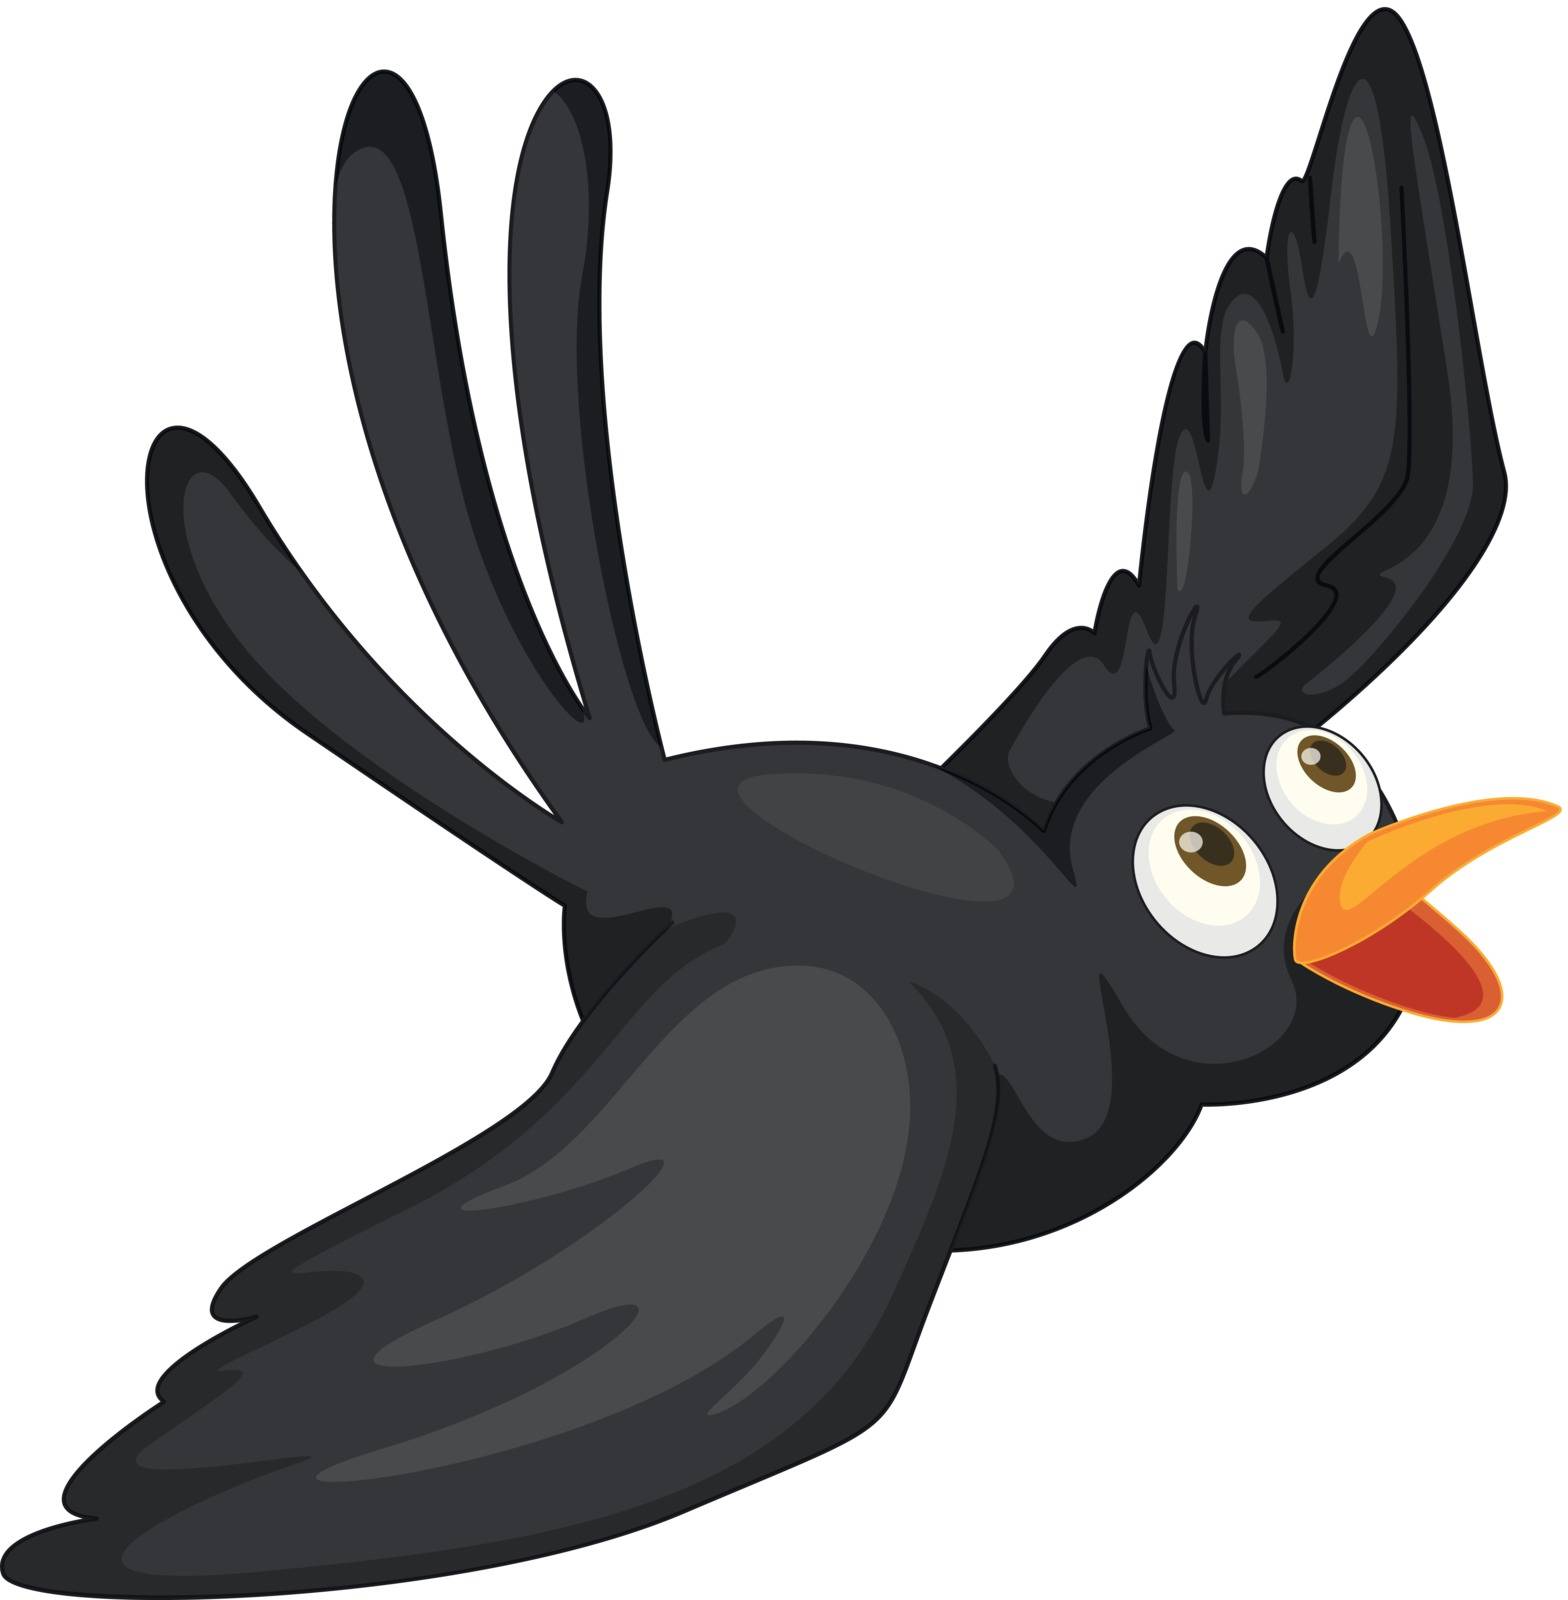 Black bird by iimages